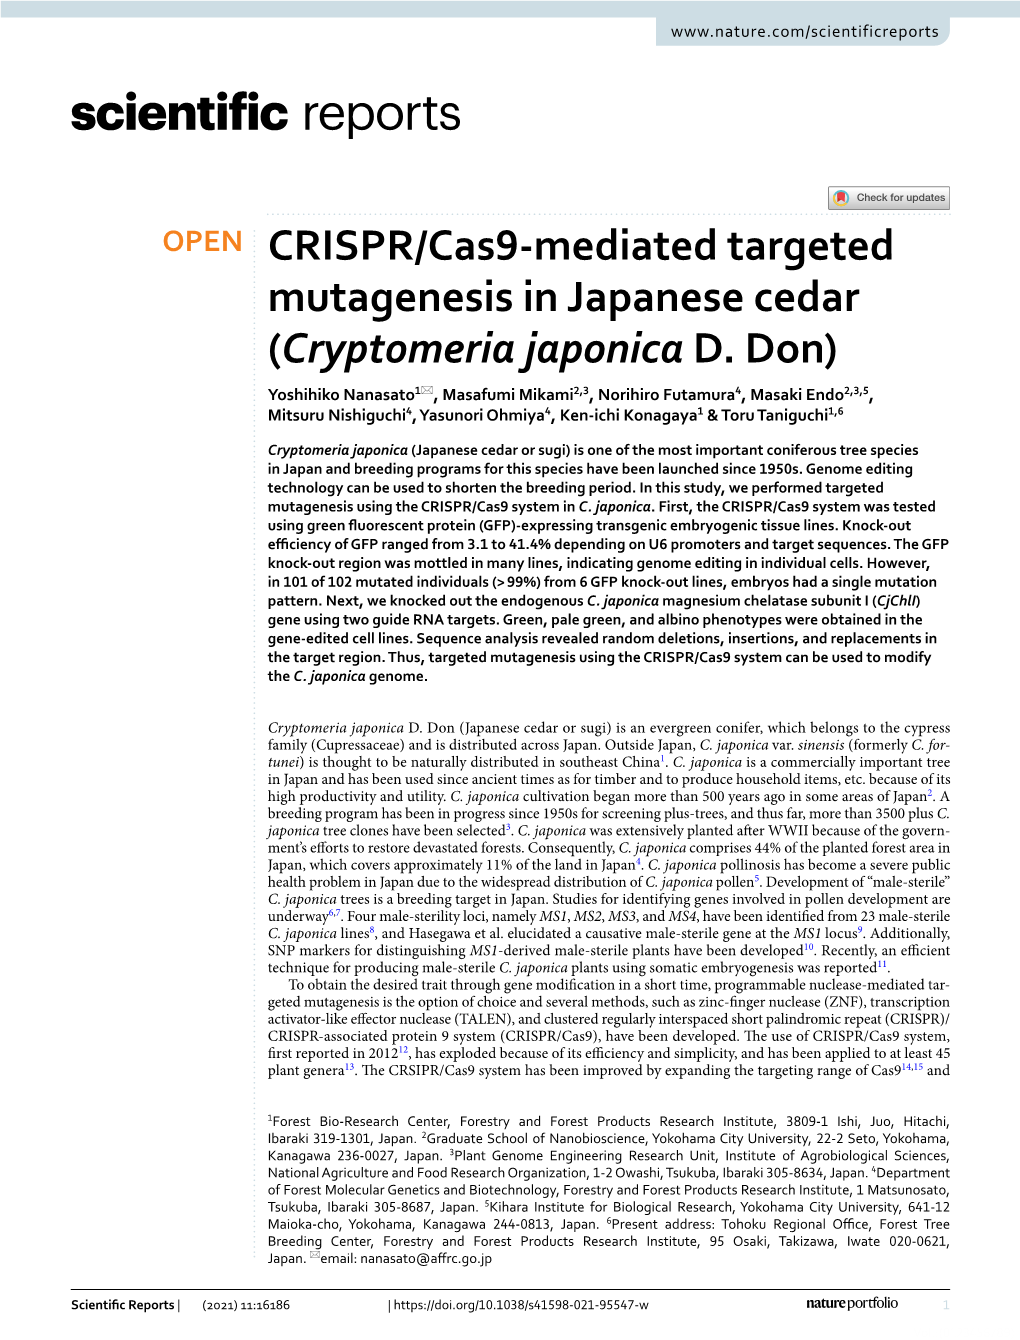 CRISPR/Cas9-Mediated Targeted Mutagenesis in Japanese